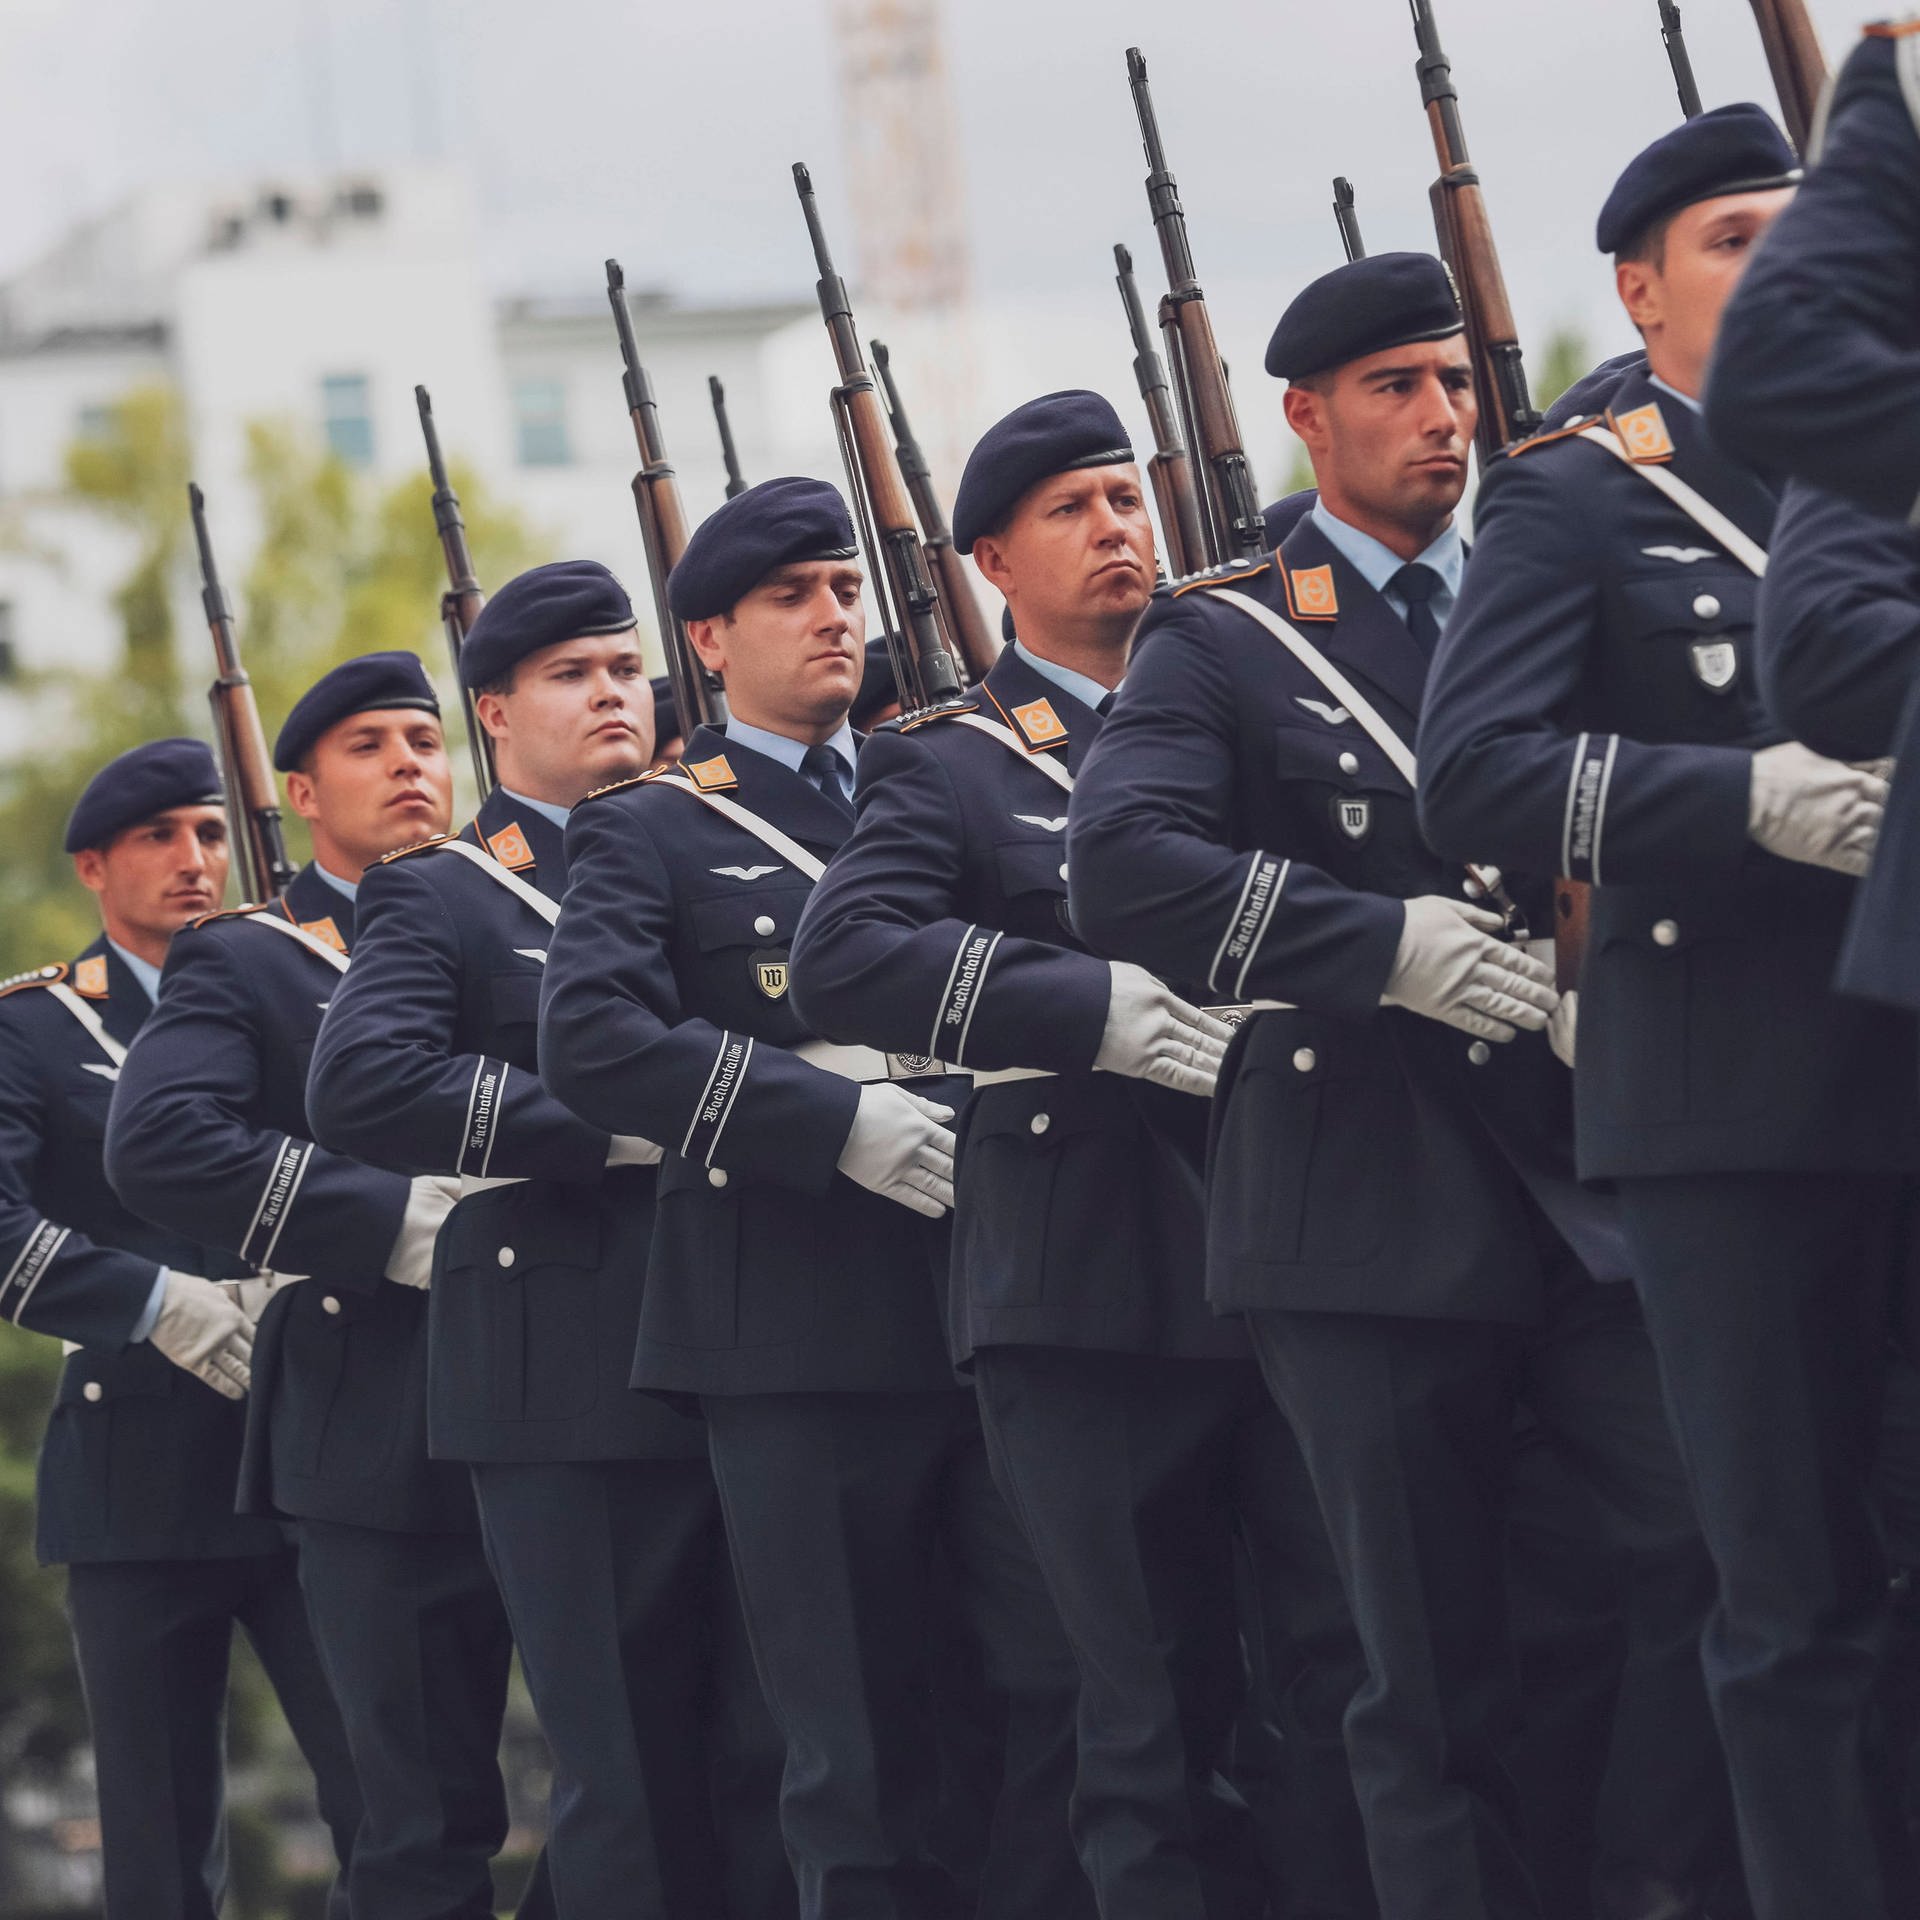 Deutsche Krieger – Wie ehrt die Gesellschaft ihre Veteranen?